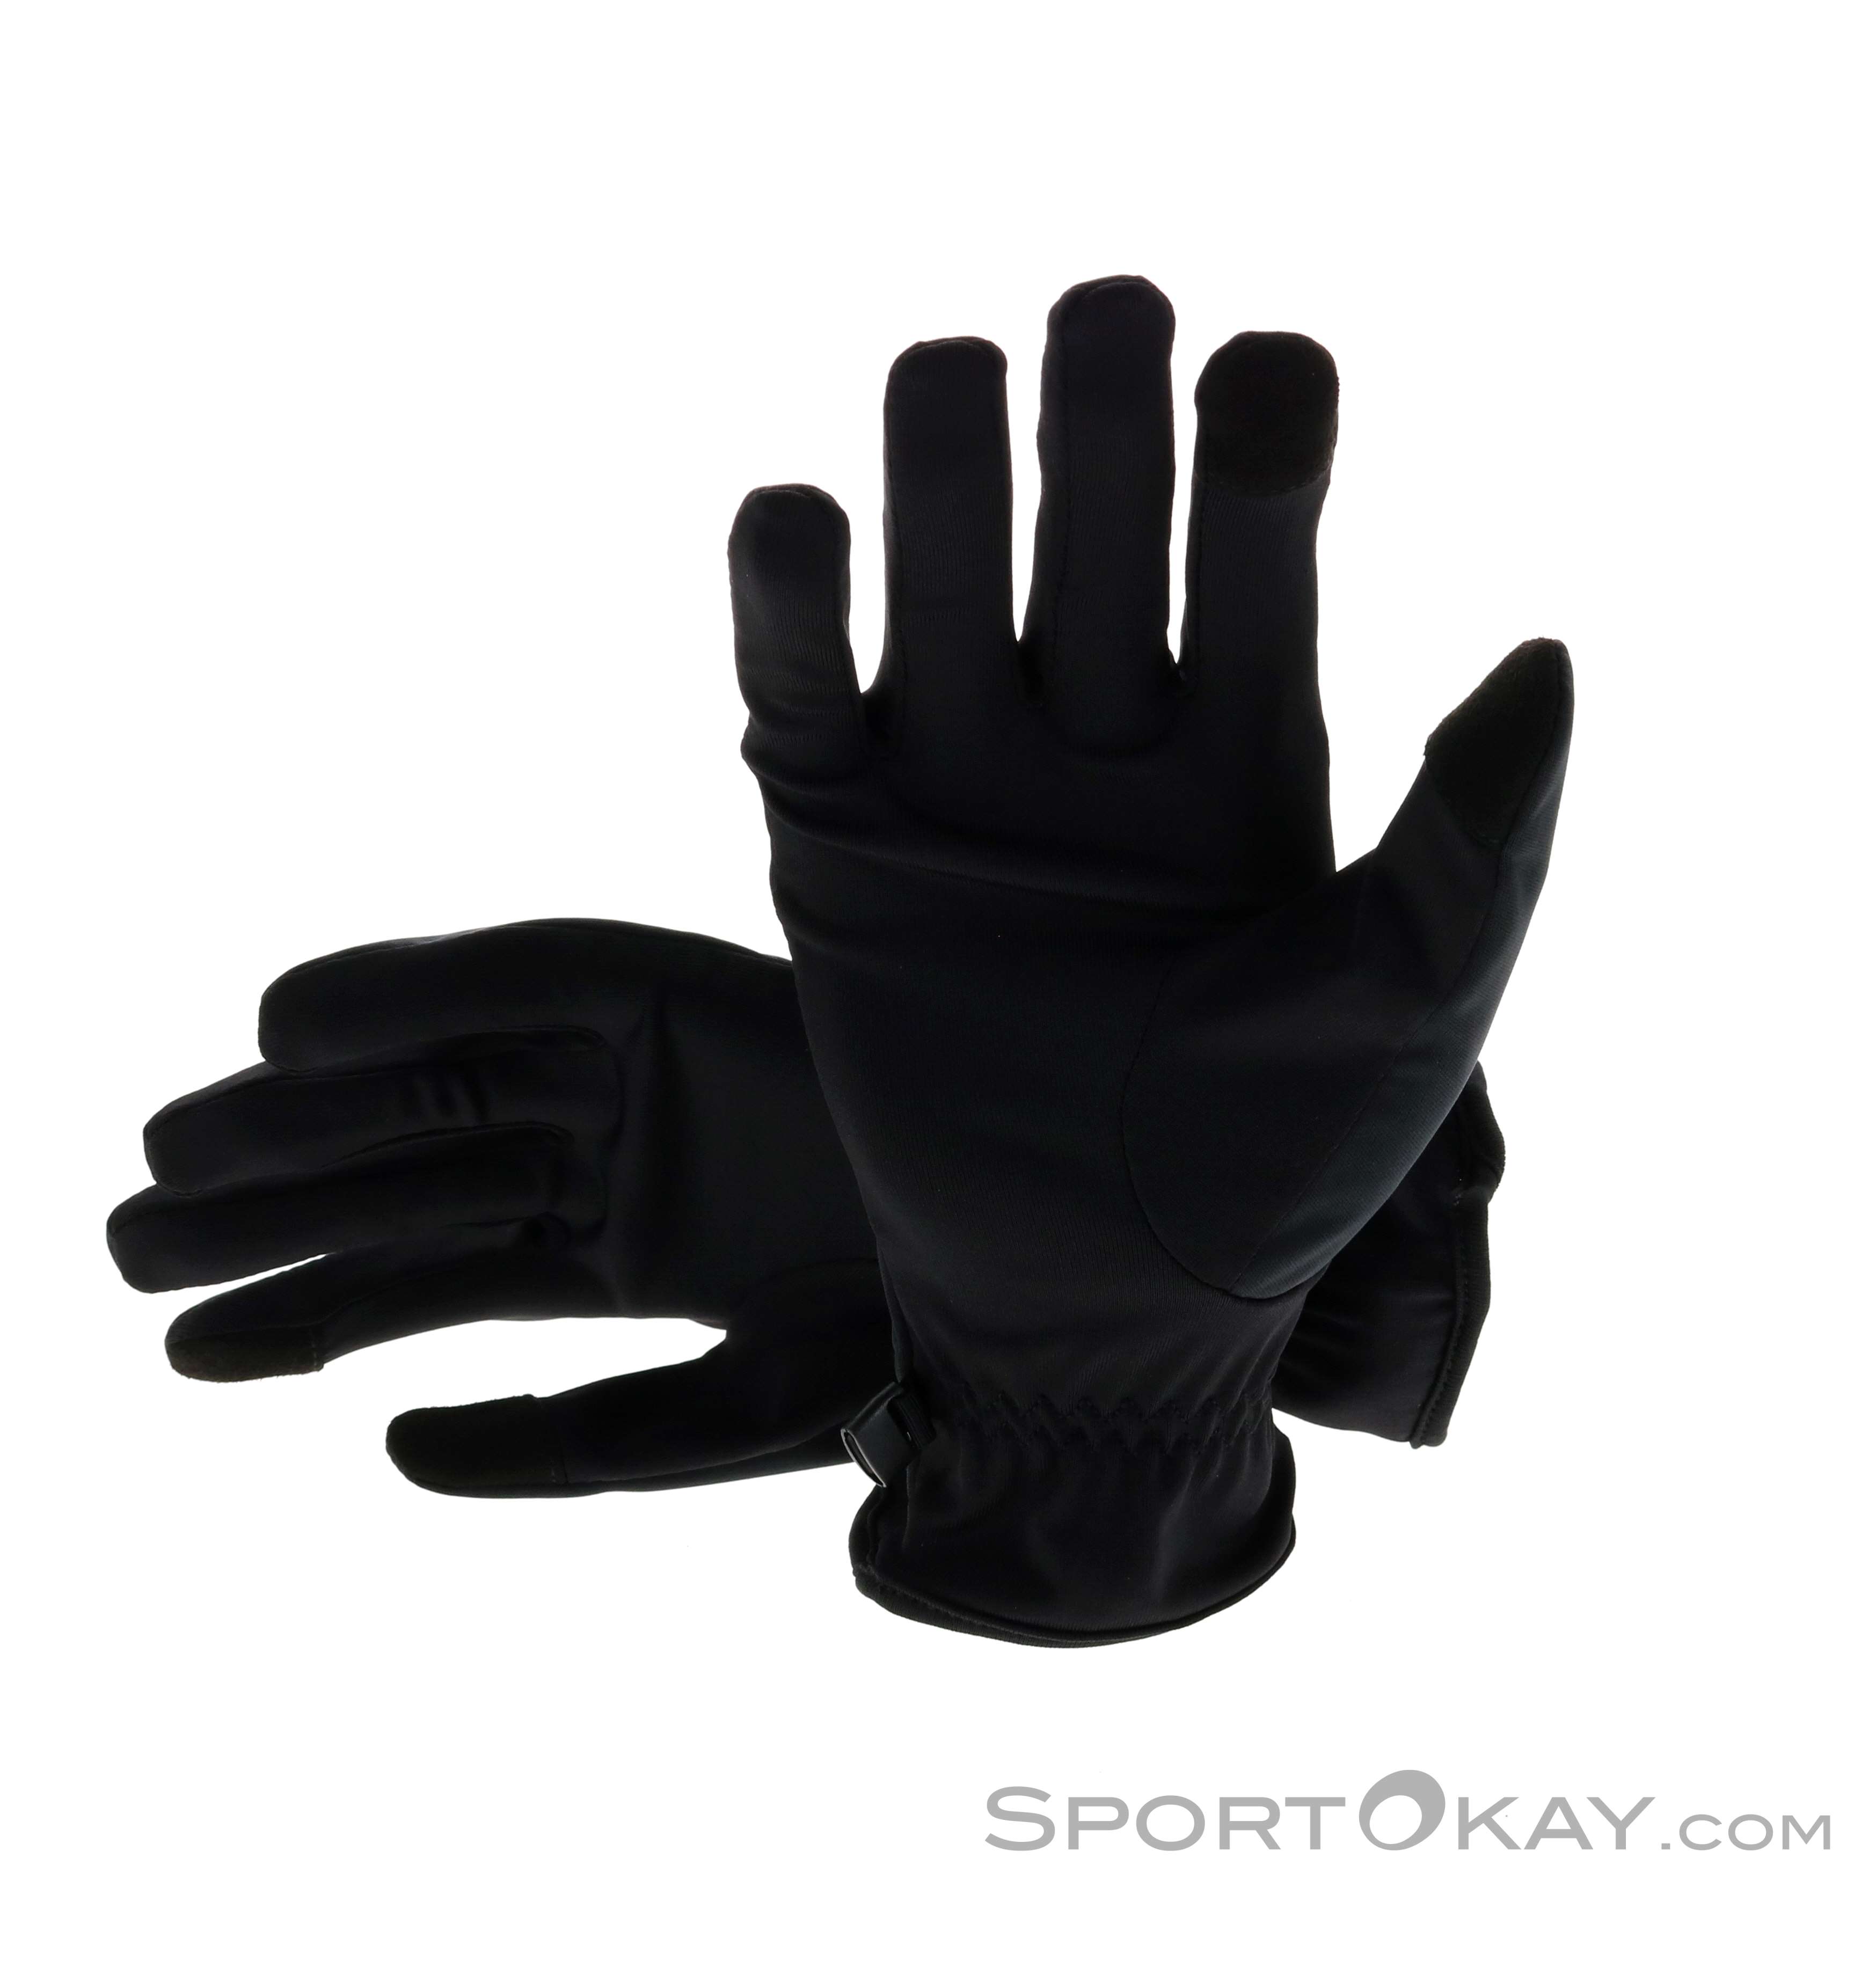 - All Gloves Asics Gloves Thermal - Running - Biking Clothing Running - Gloves